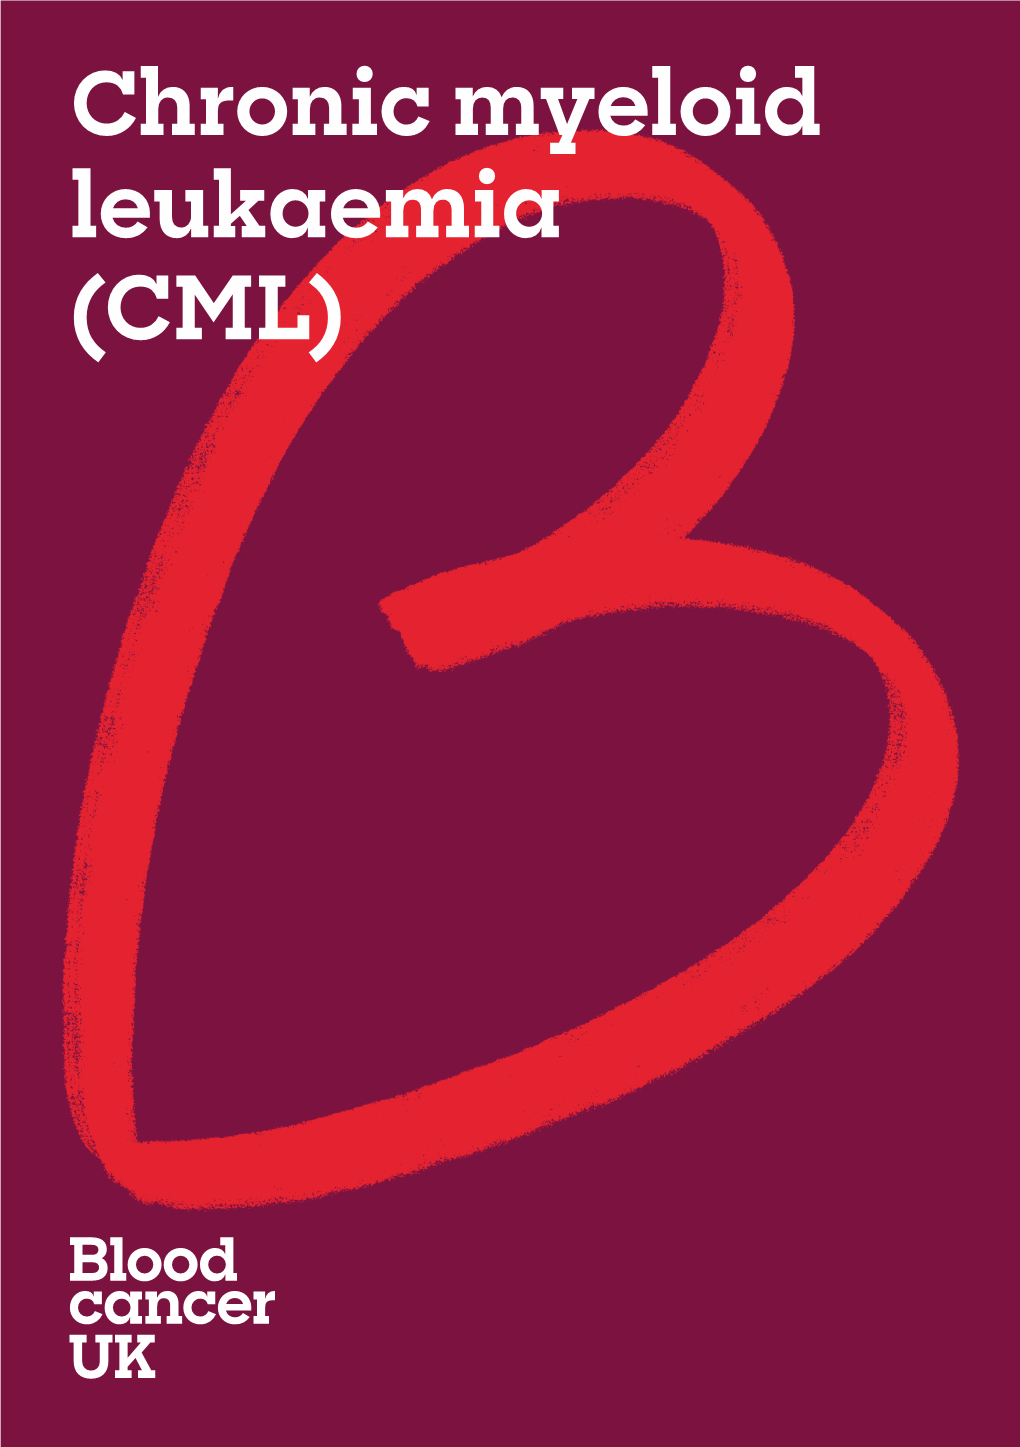 Chronic Myeloid Leukaemia (CML)